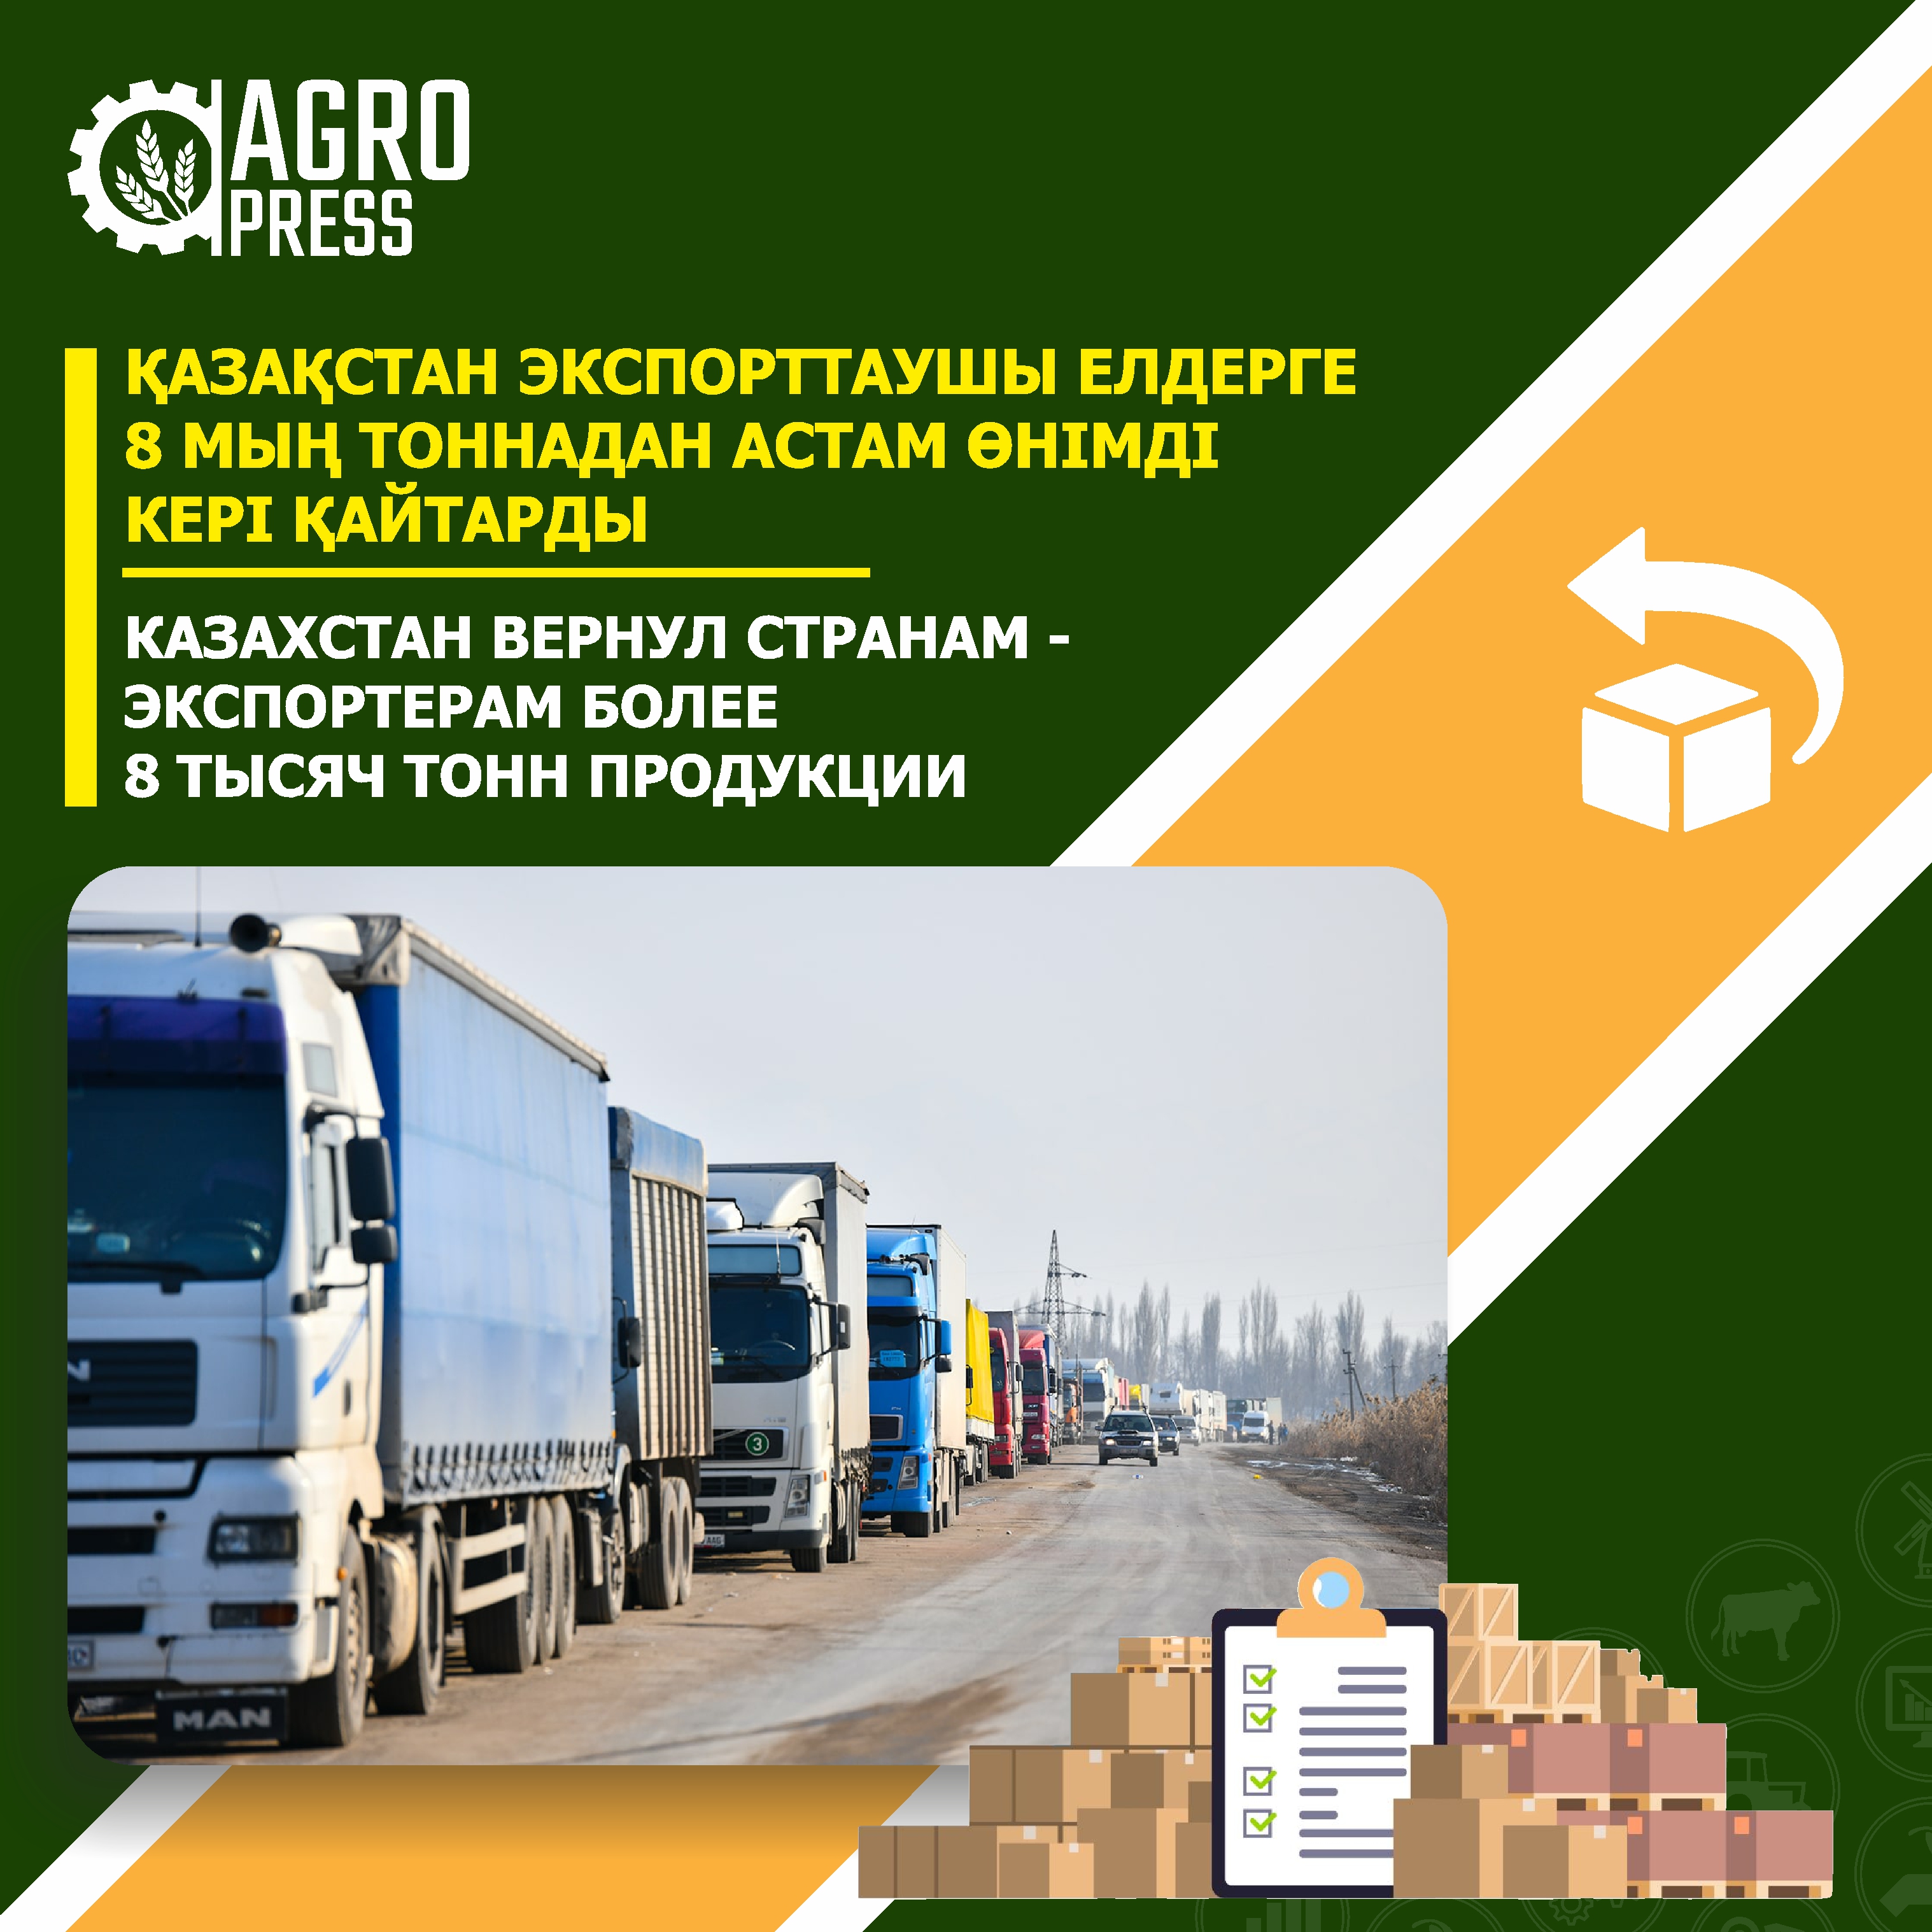 Казахстан вернул странам-экспортерам более 8 тысяч тонн продукции